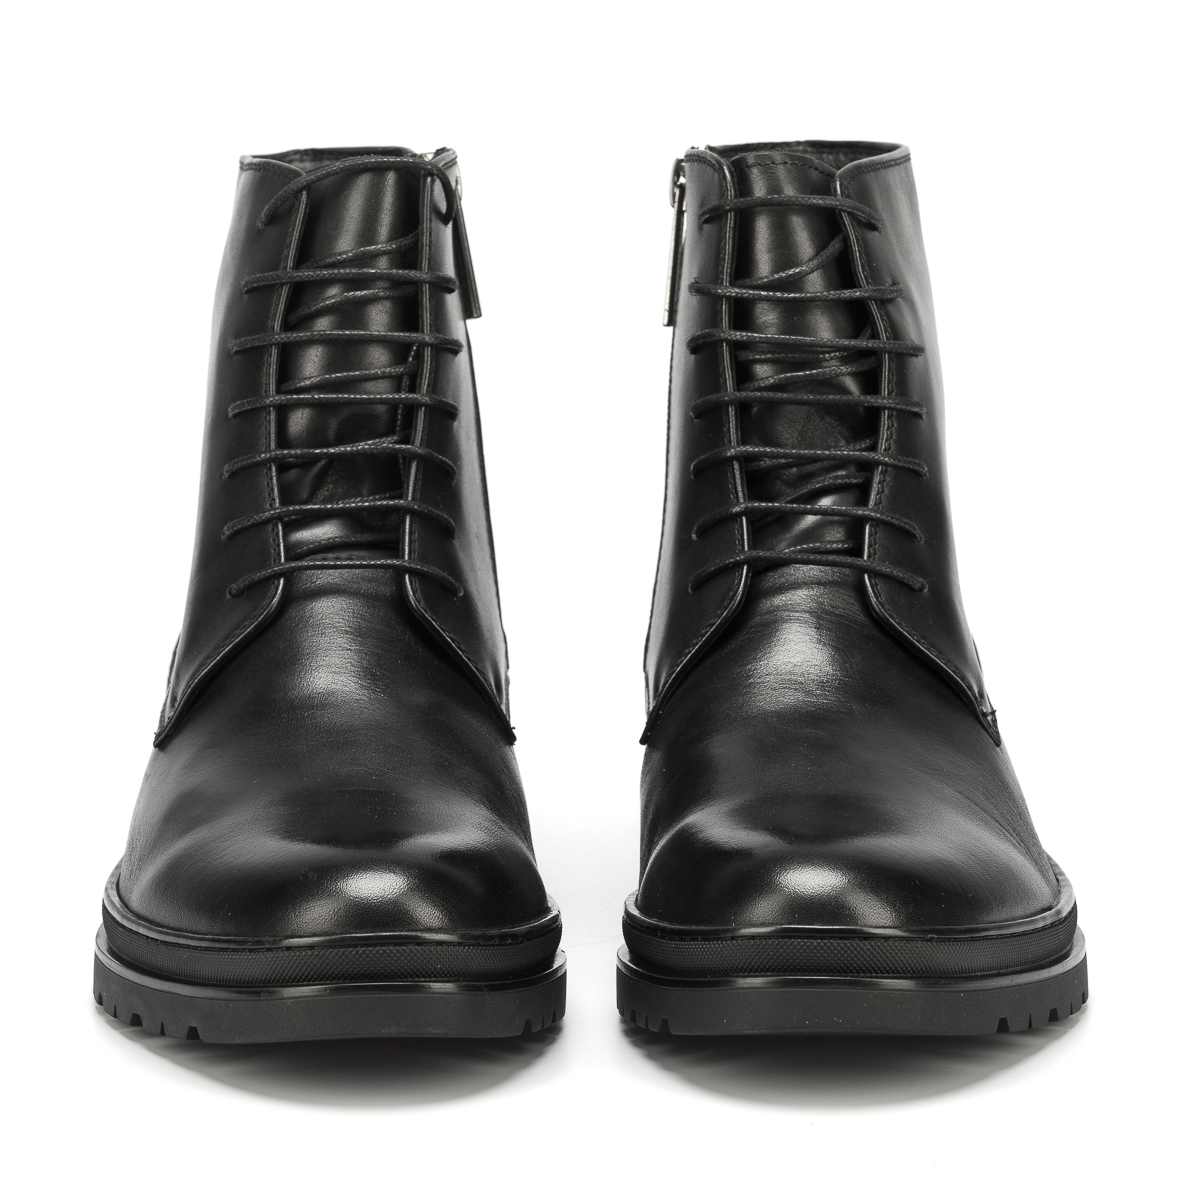 Картинка аяқ киім/ботинки Thomas Graf Интернет магазин Kimex + мужское + обувь + ботинки